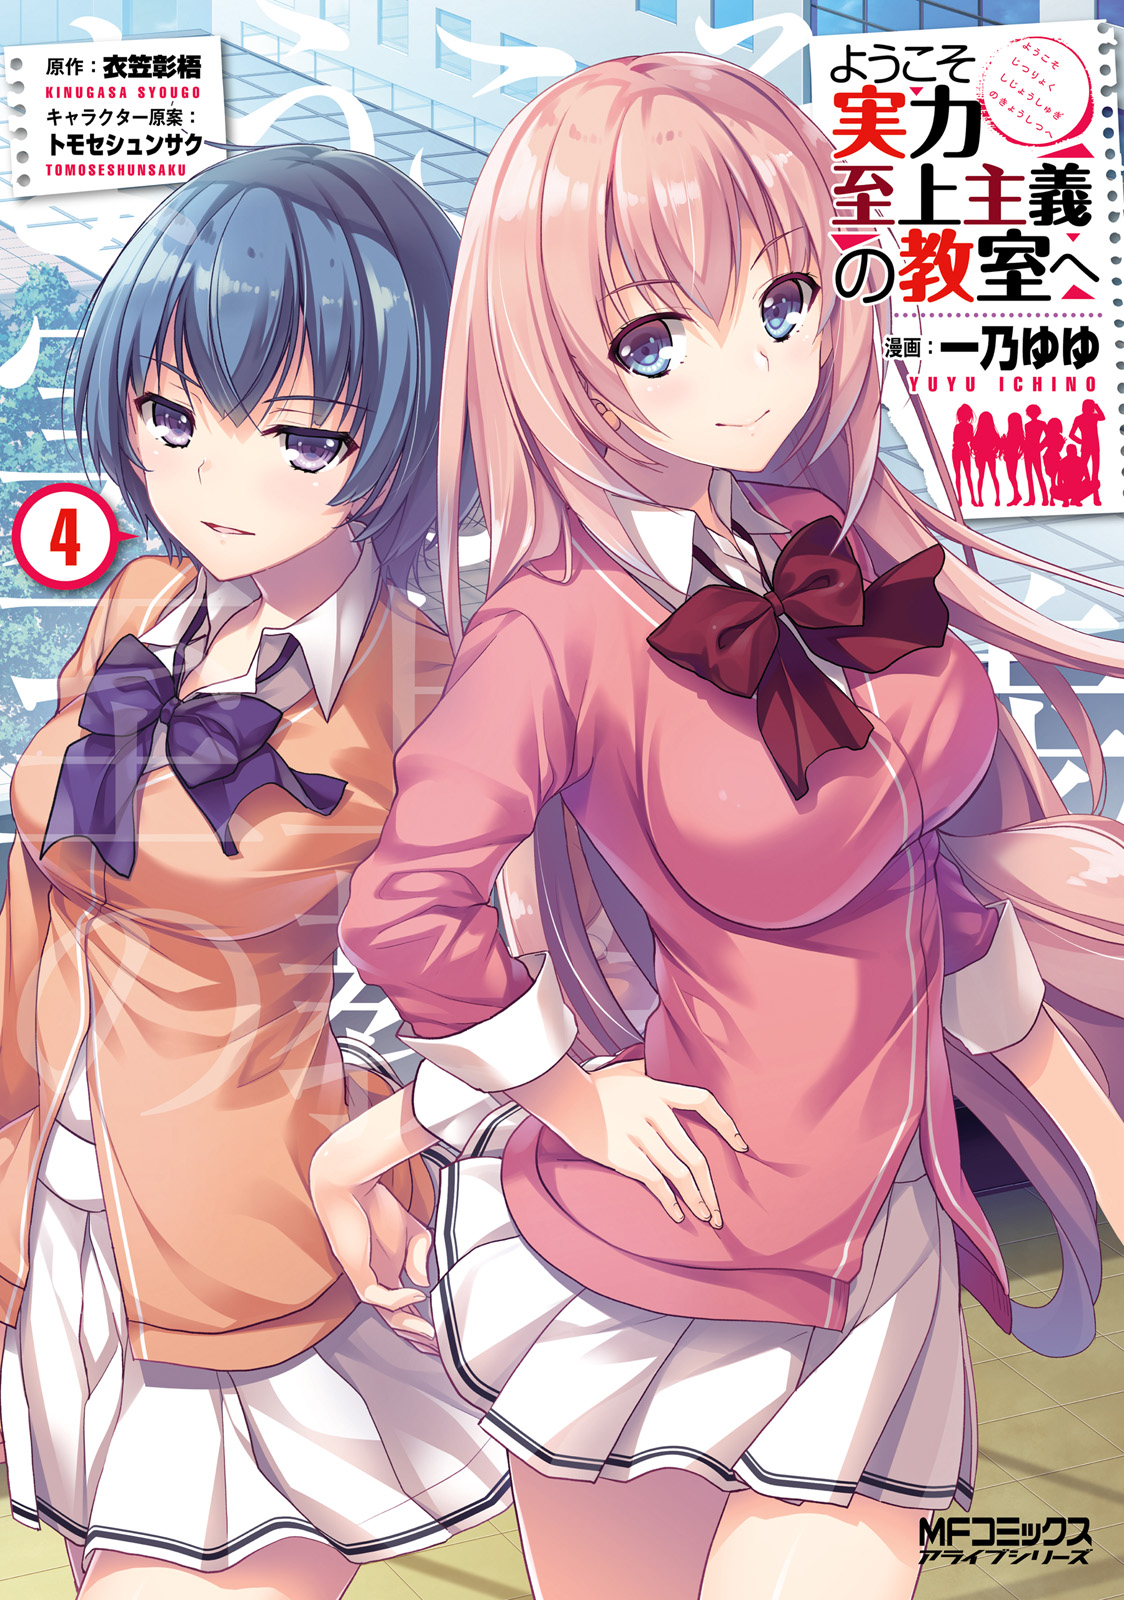 Youkoso Jitsuryoku Shijou Shugi No Kyoushitsu E Vol.4 Light Novel Anime  Japan for sale online